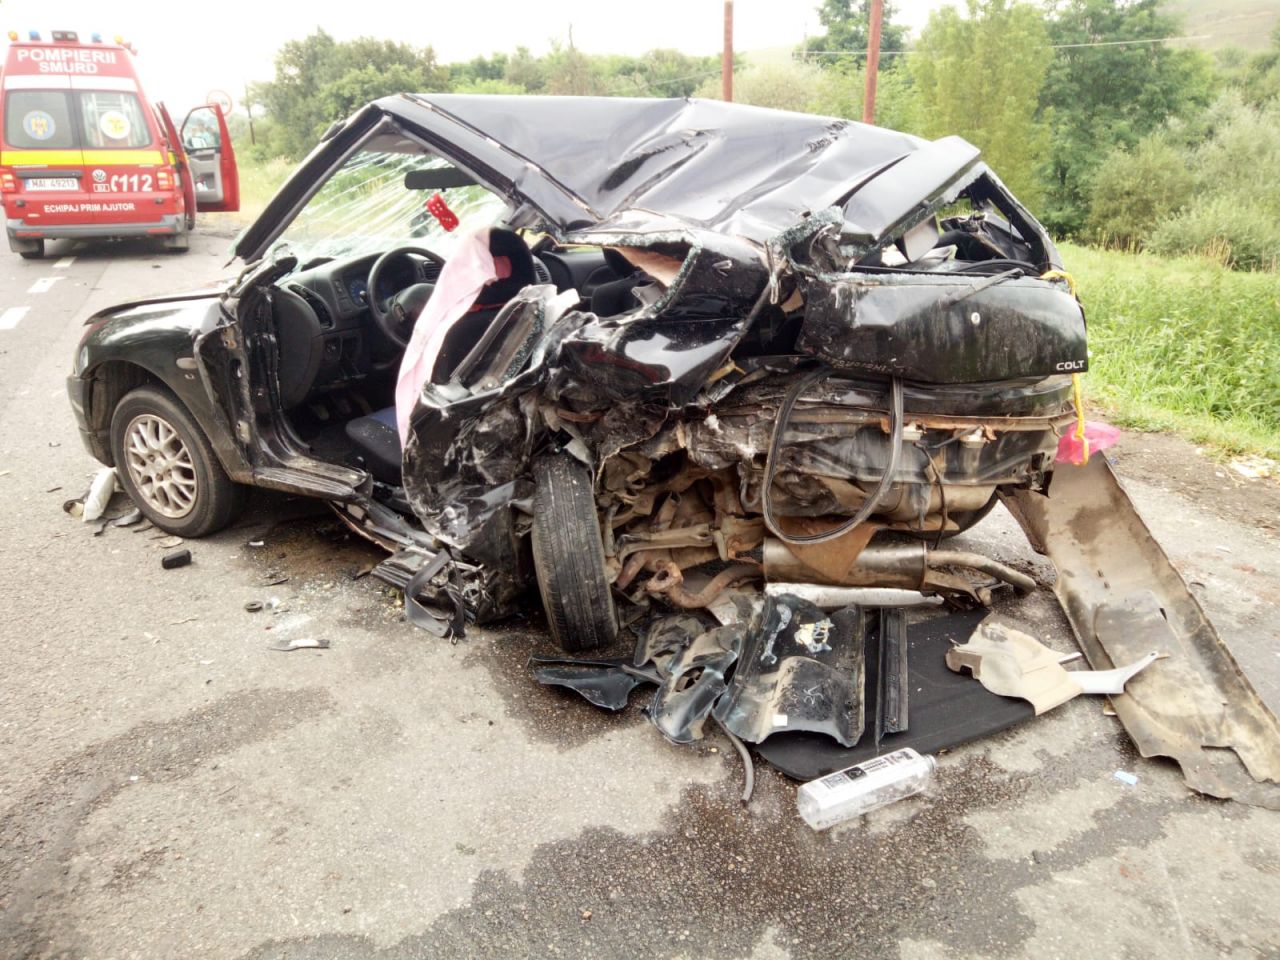 Șoferul băut, vinovat pentru accidentului produs sâmbătă lângă Gilău, a fost arestat pentru 30 de zile